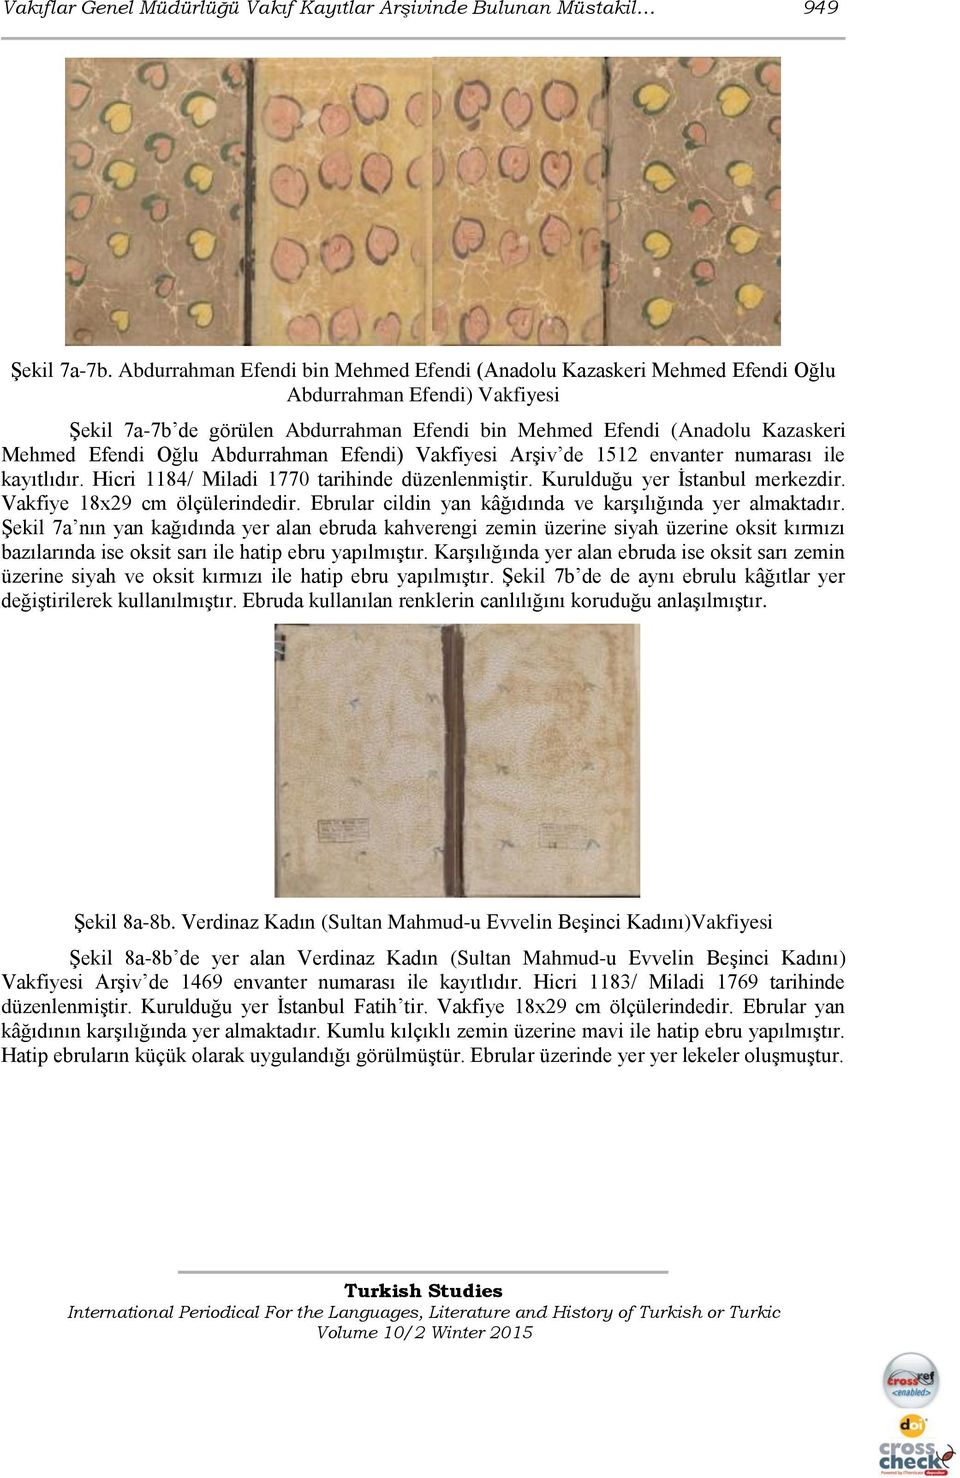 Oğlu Abdurrahman Efendi) Vakfiyesi Arşiv de 1512 envanter numarası ile kayıtlıdır. Hicri 1184/ Miladi 1770 tarihinde düzenlenmiştir. Kurulduğu yer İstanbul merkezdir. Vakfiye 18x29 cm ölçülerindedir.